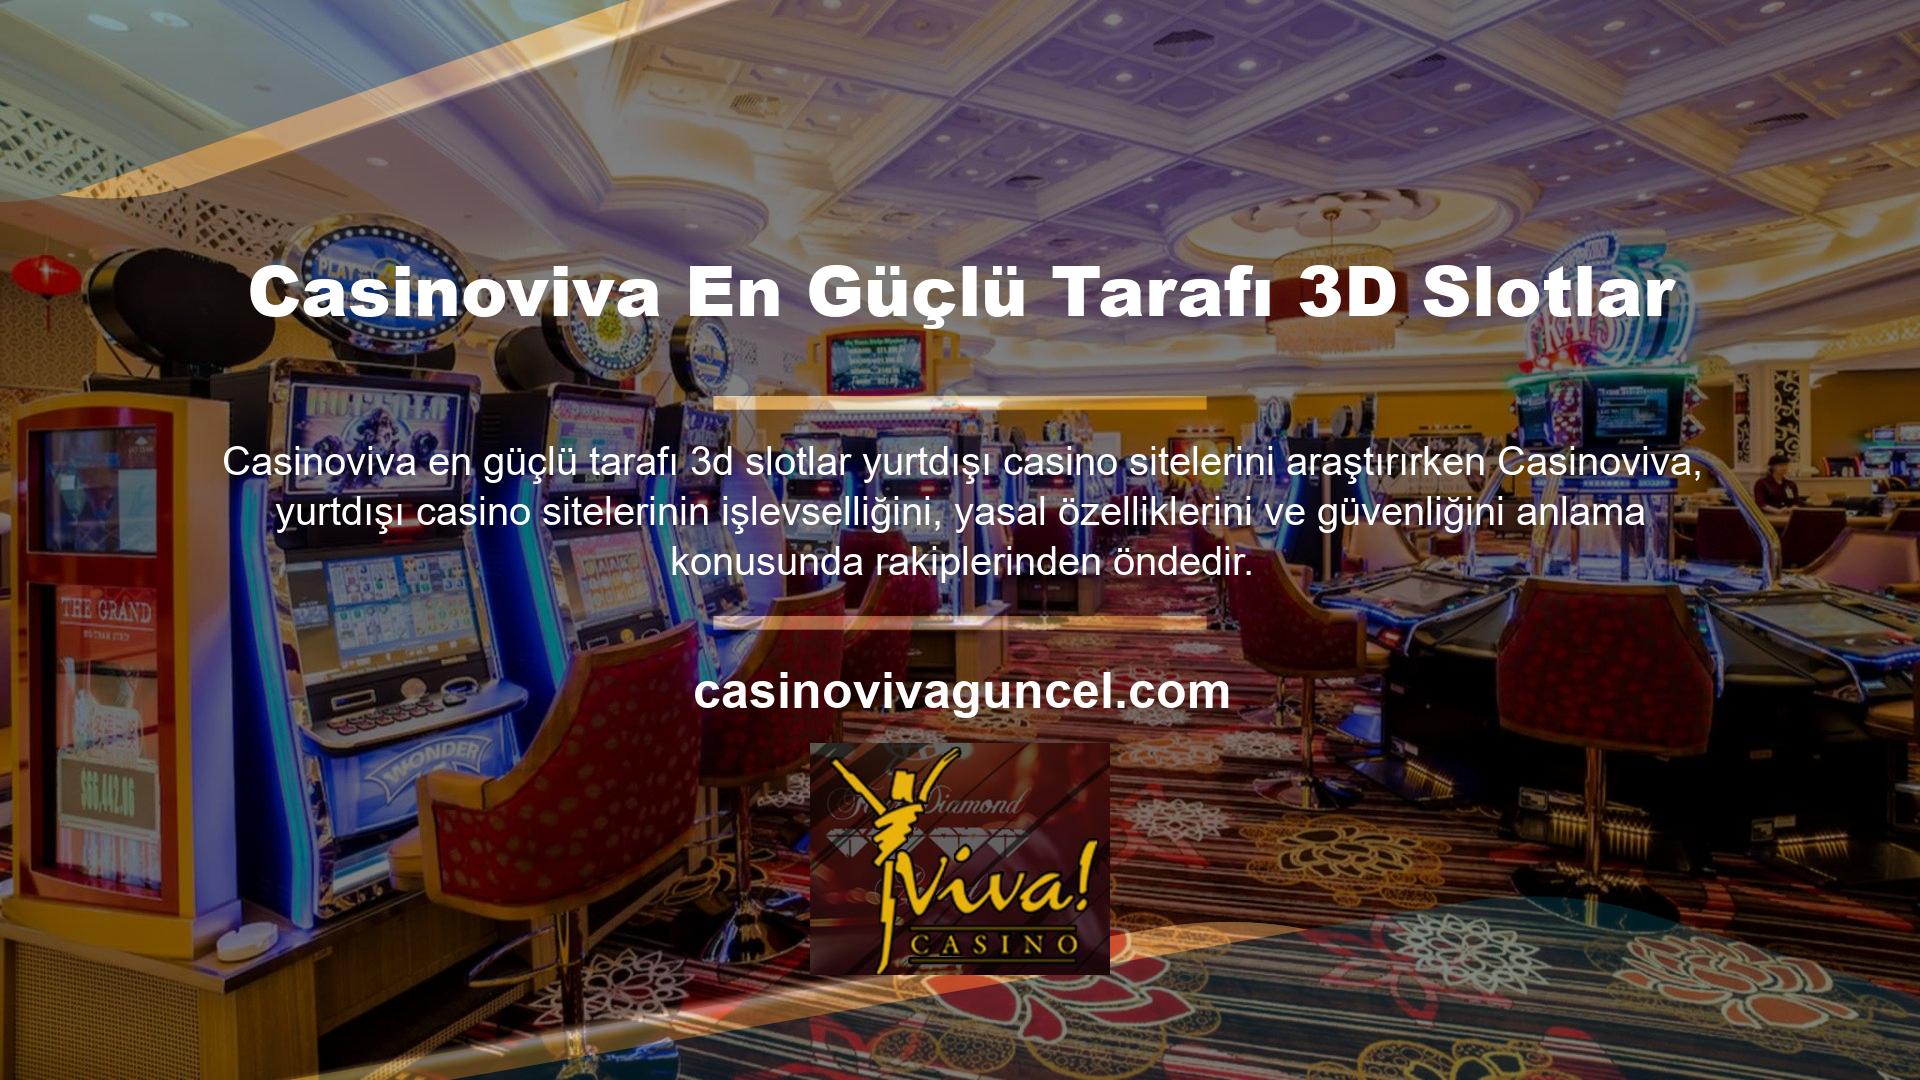 Casinoviva en güçlü yanı en güçlü 3D slot olarak belirlendi ve tüm oyunculara ve oyun yetkililerine duyuruldu